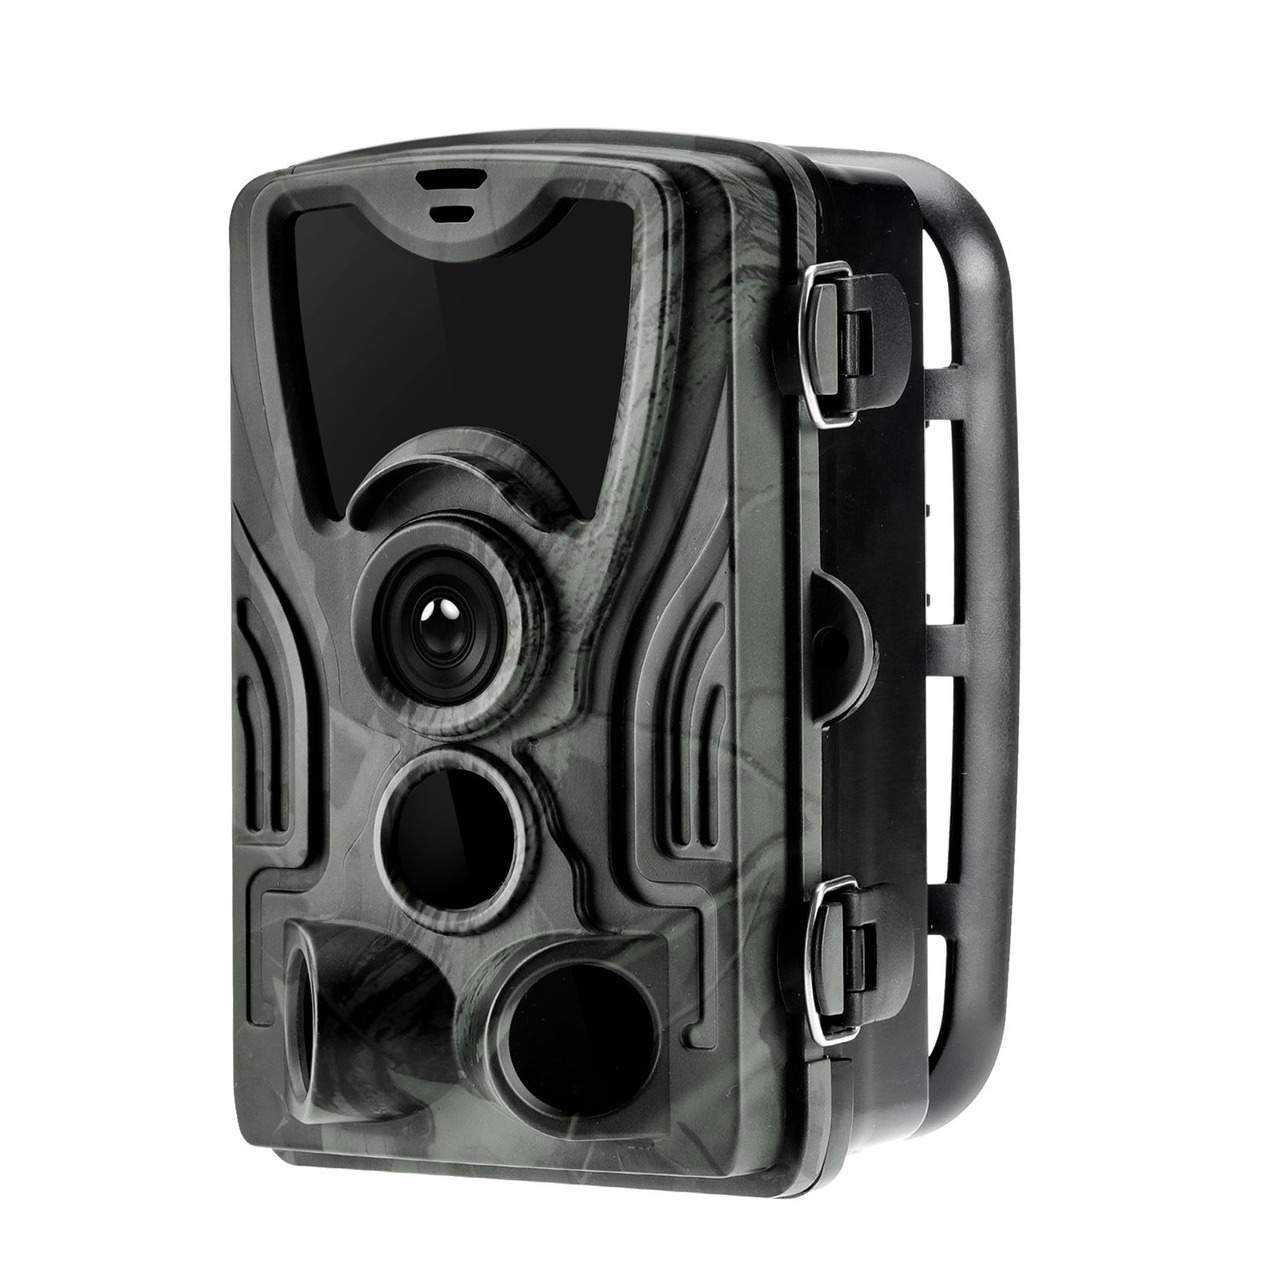 Braun Fotofalle - Wildkamera Scouting Cam BLACK550- 24 MP- IP65- 940 nm unter Sicherheitstechnik